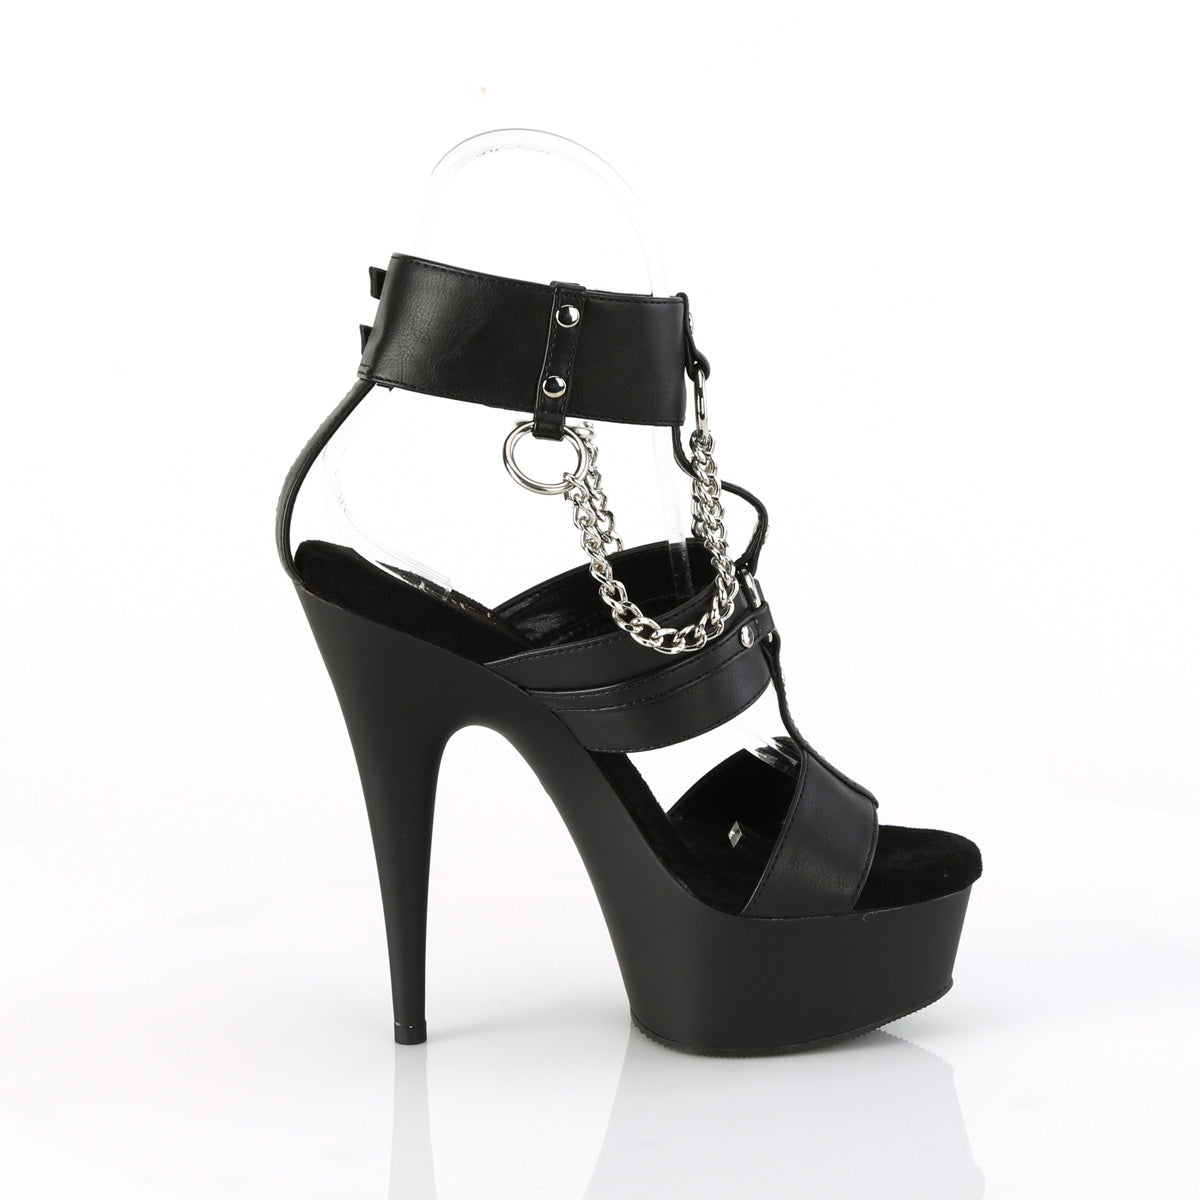 DELIGHT-661 Pleaser Black Faux Leather/Black Matte Platform Shoes [Exotic Dance Shoes]